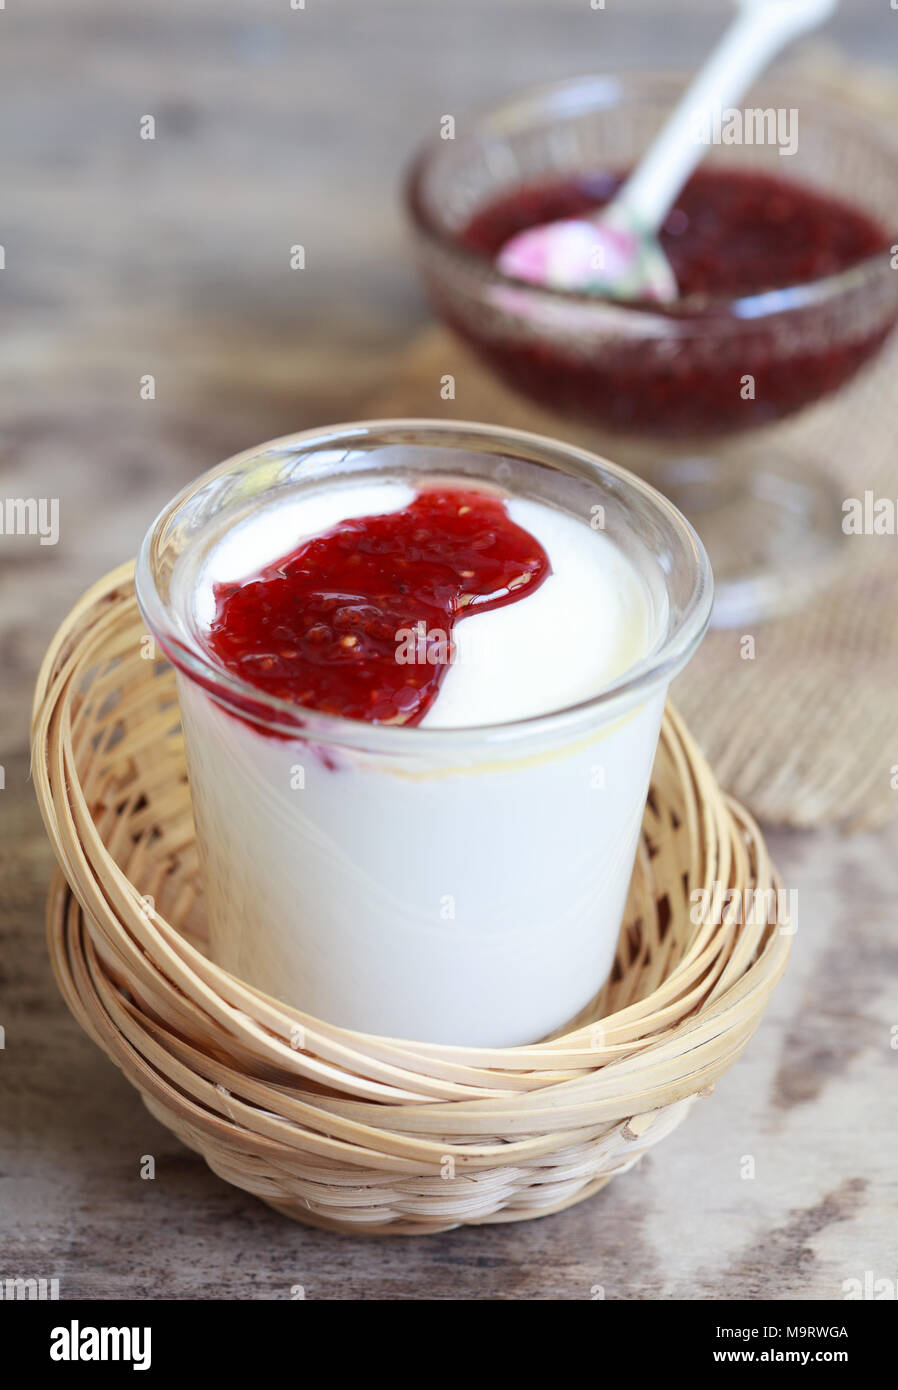 Petit pot de yaourts à la confiture de framboises dans un des paniers d'osier sur une table en bois, selective focus Banque D'Images